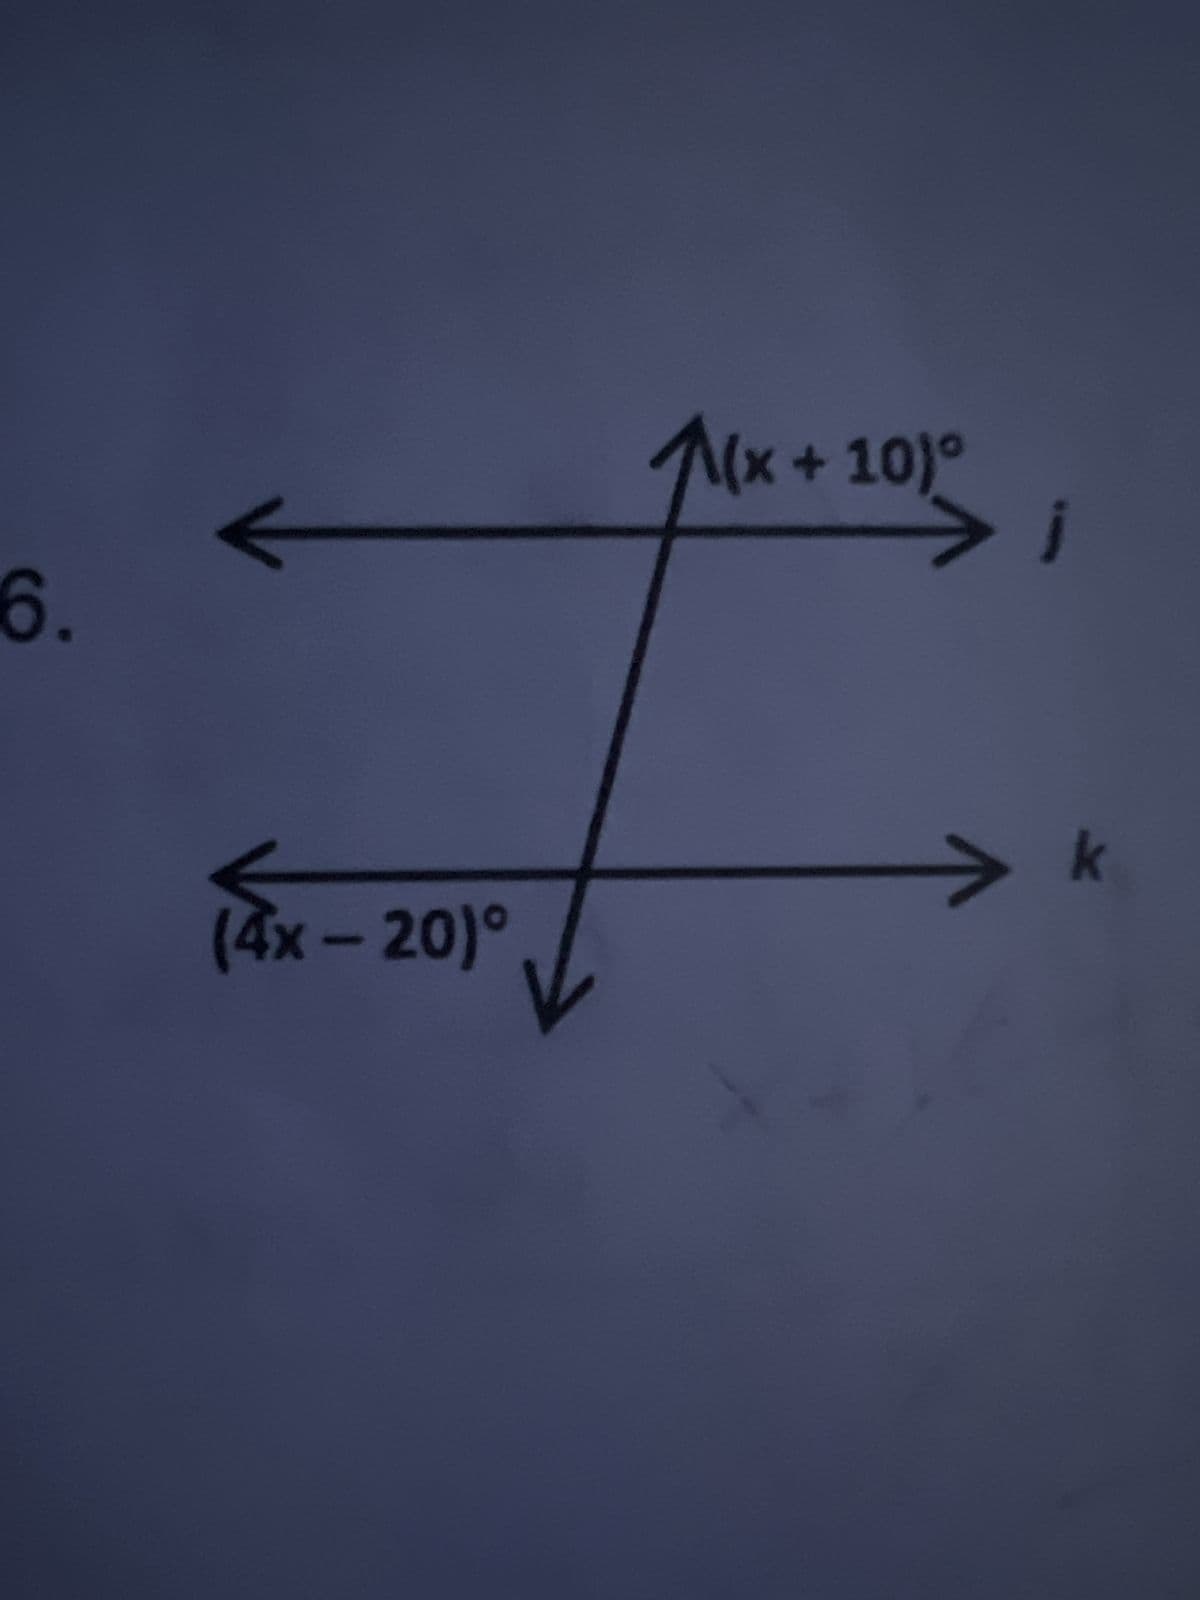 6.
XB)
(4x-20)°
(x + 10)°
1
k